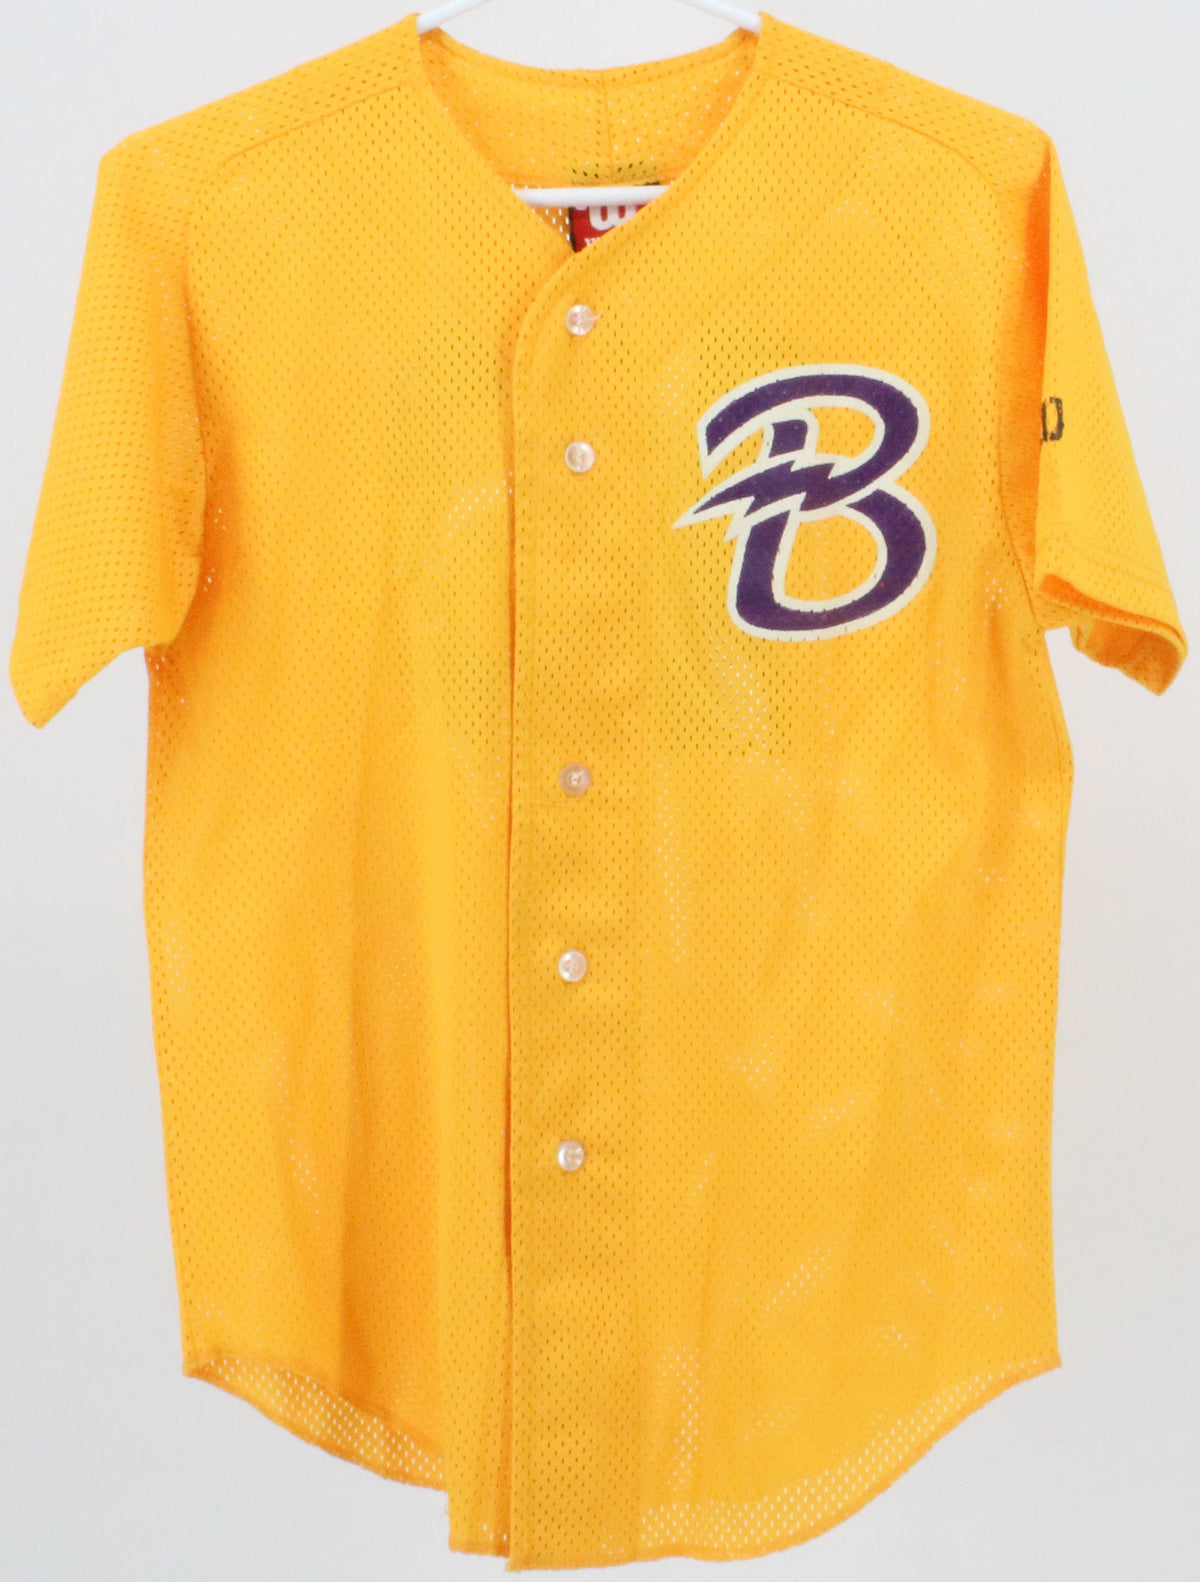 Wilson Youth B 13 Yellow Baseball Jersey